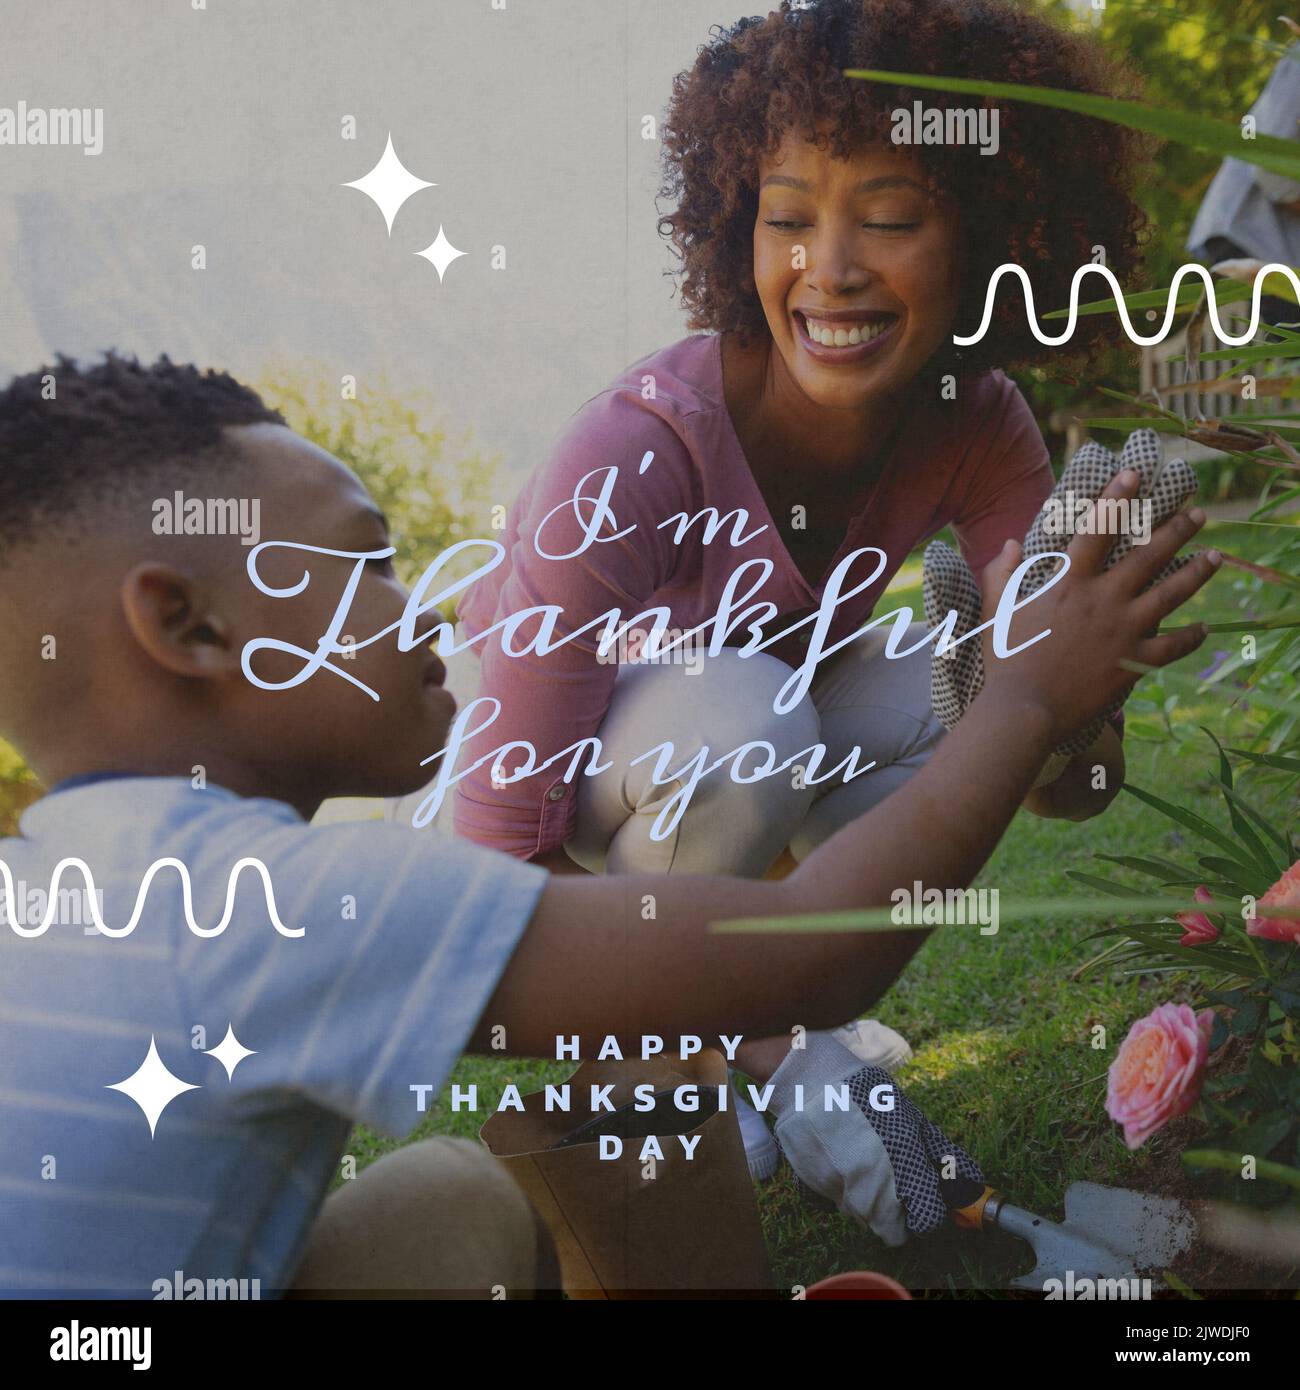 Composition du texte de Thanksgiving sur la mère afro-américaine avec son fils dans le jardin Banque D'Images